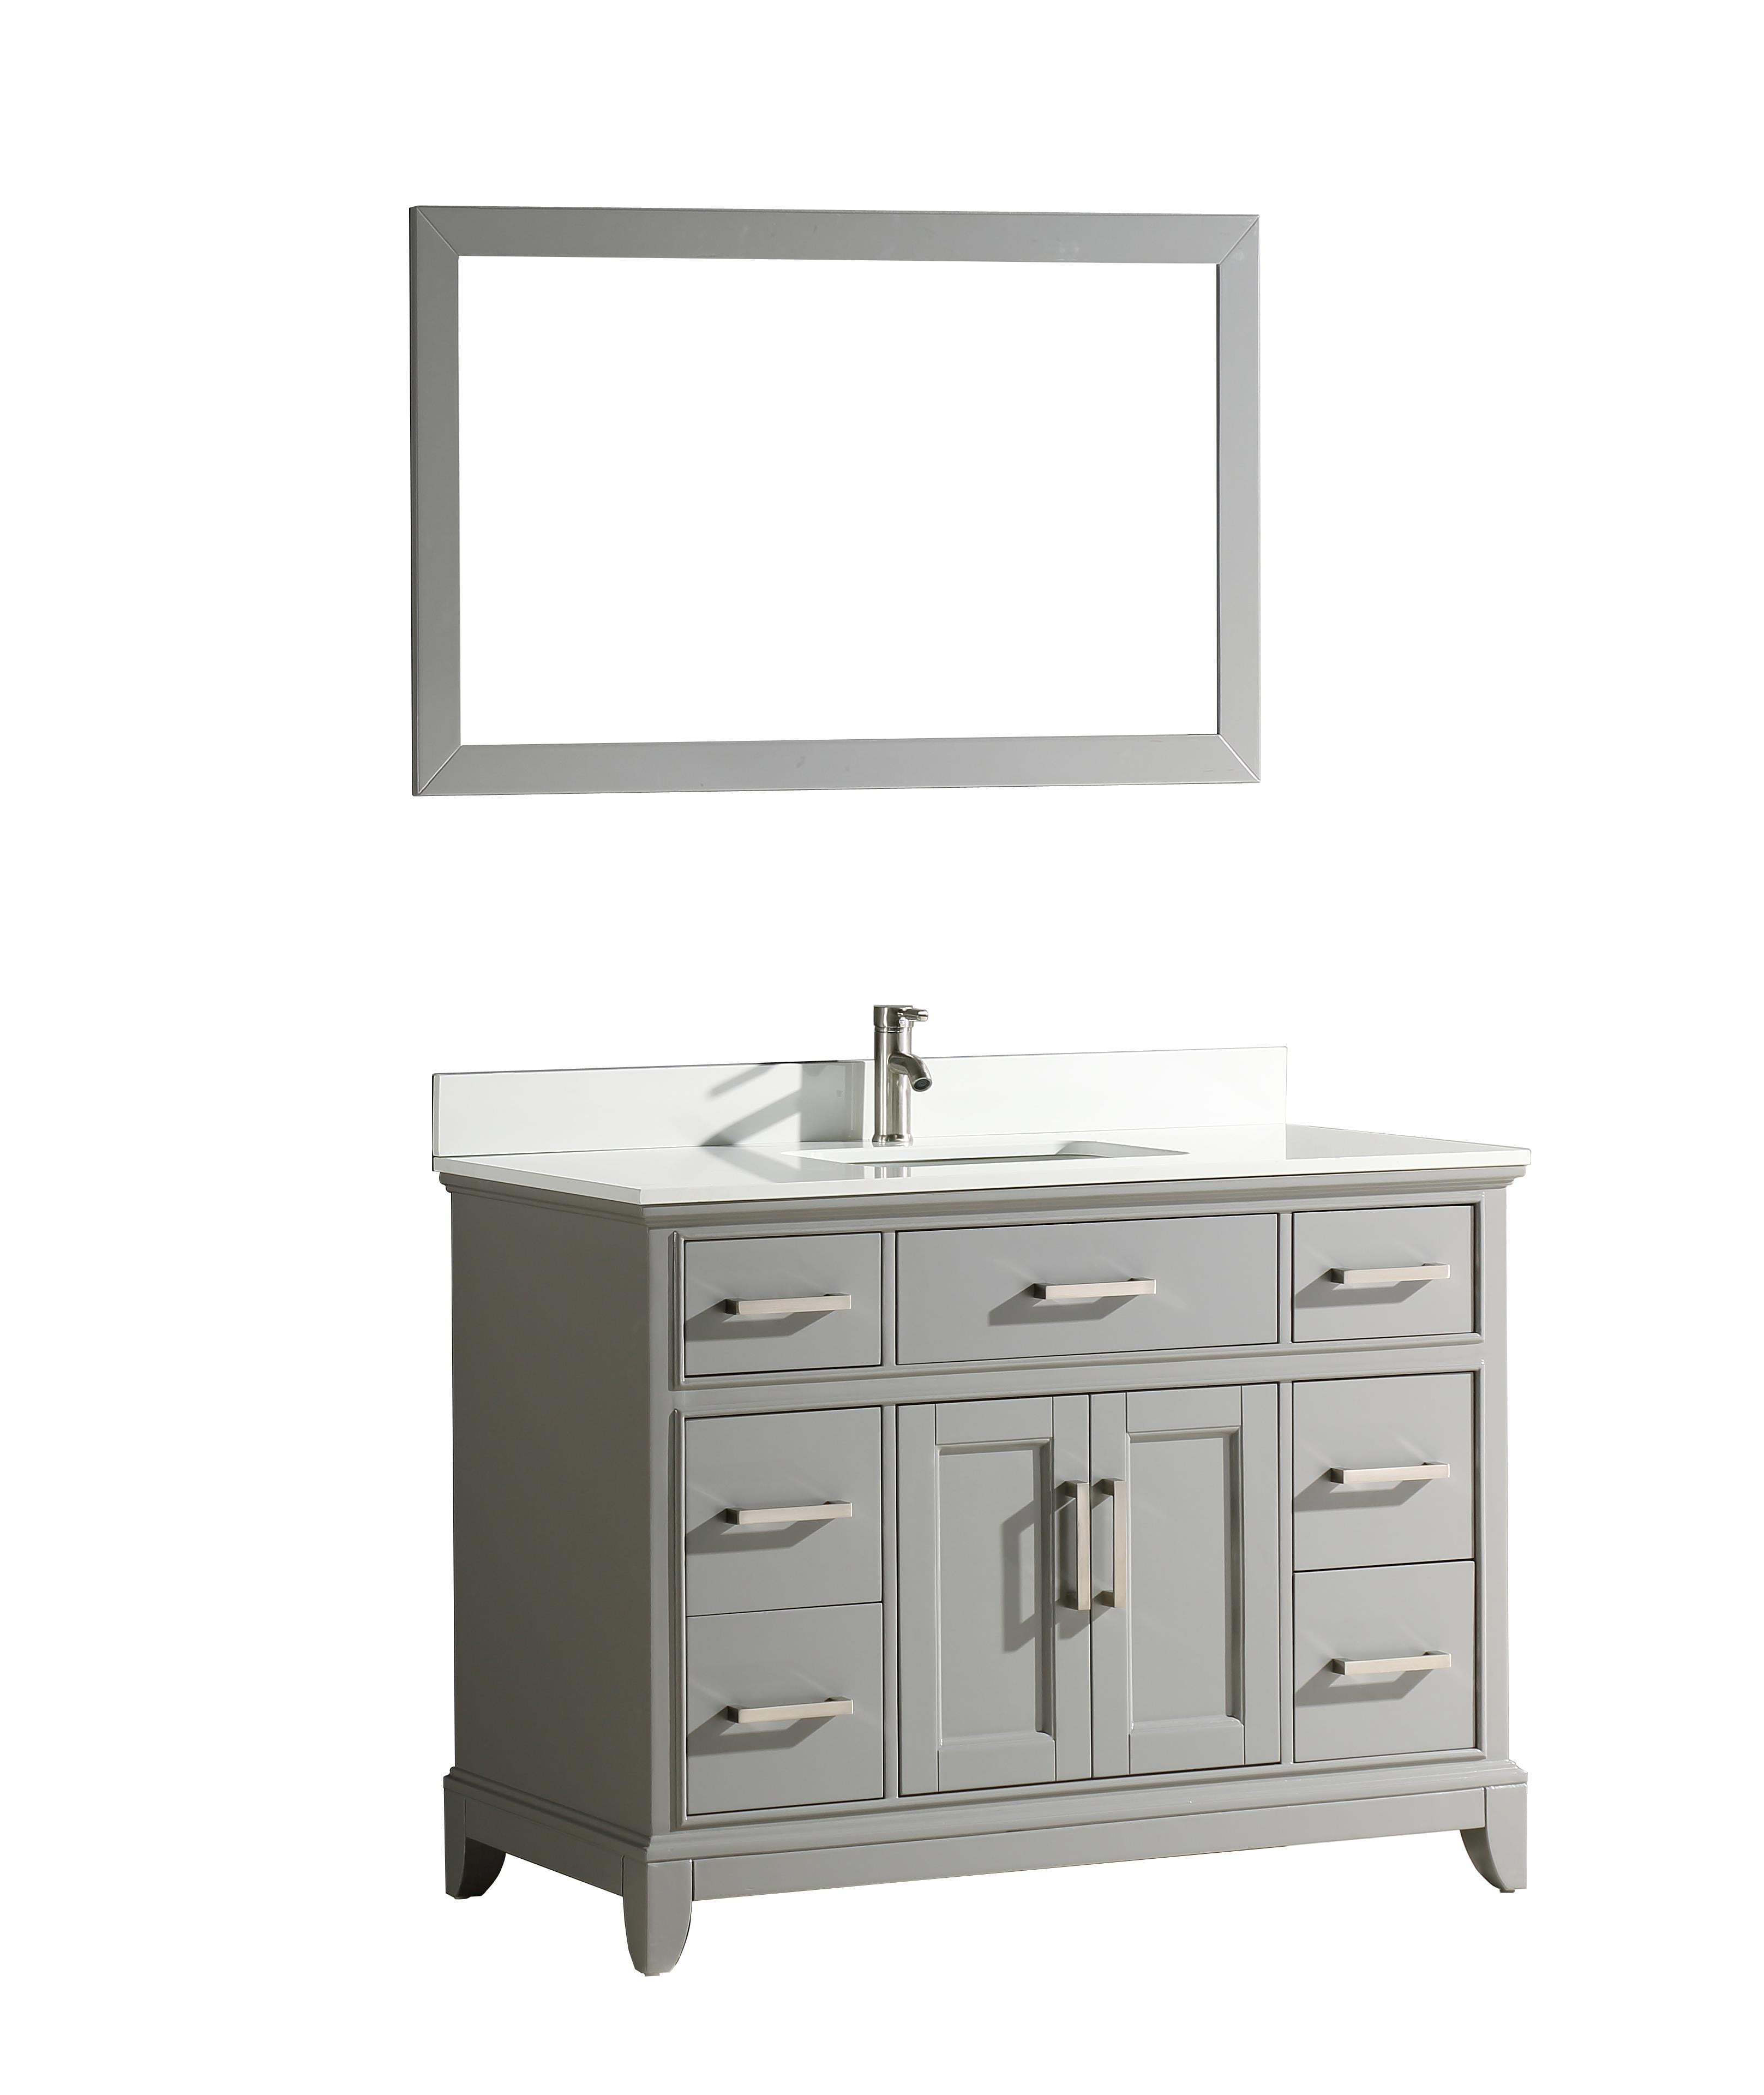 Vanity Art 48 Inch Single Sink Bathroom Vanity Set With Super White Phoenix Stone Vanity Top Walmartcom Walmartcom